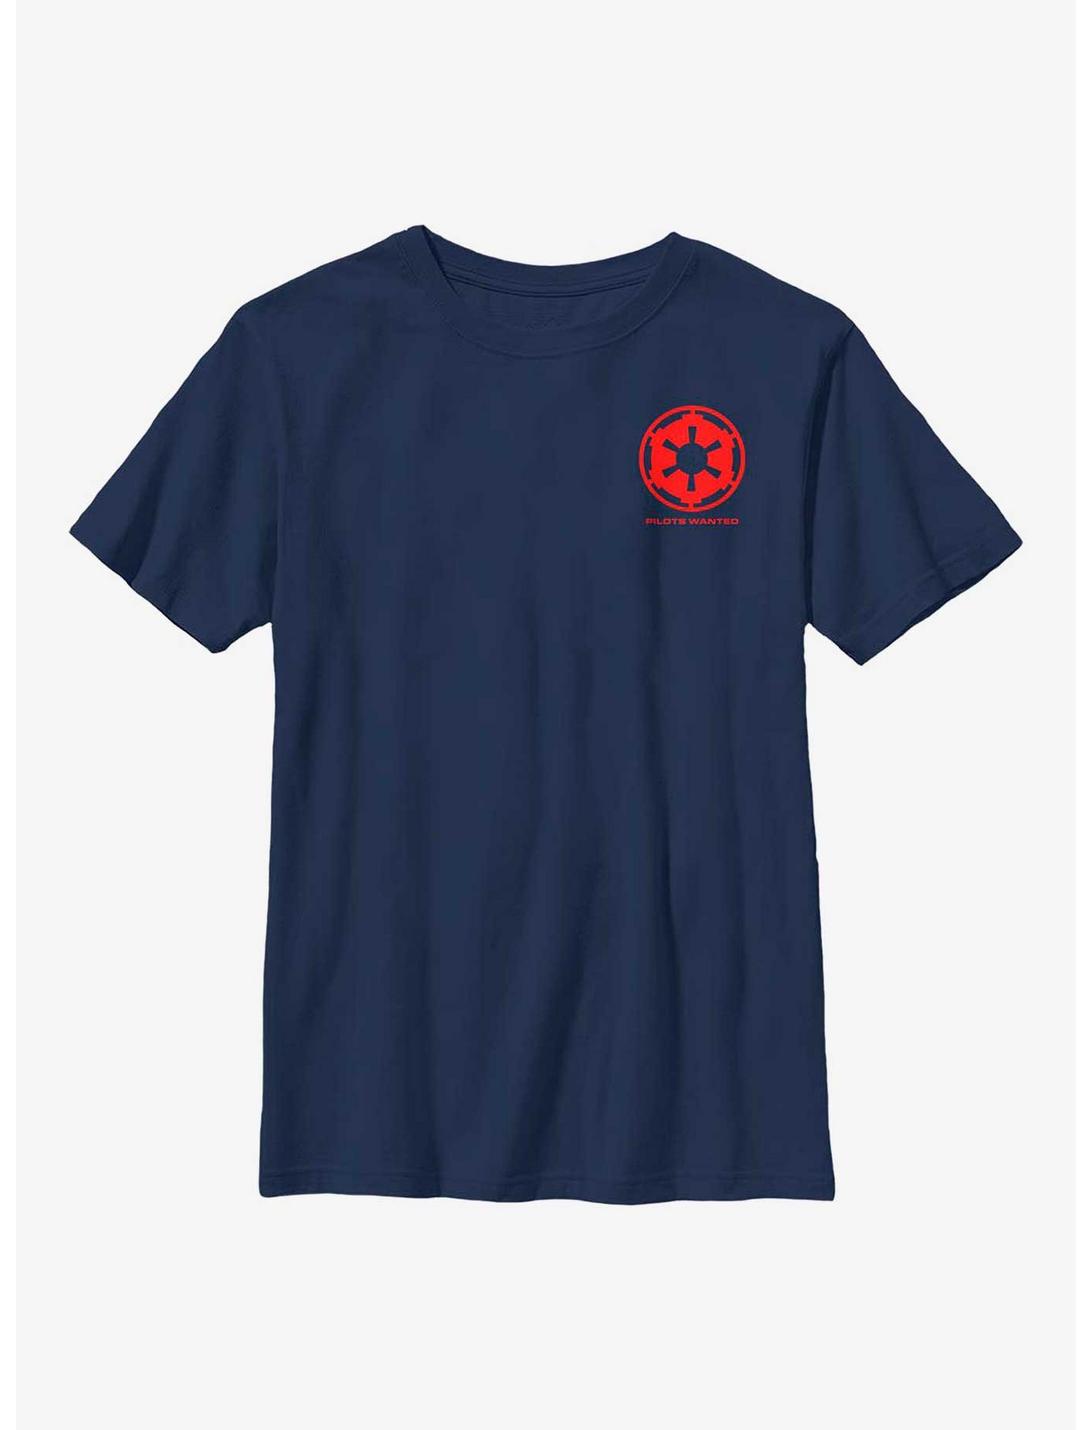 Star Wars Empire Logo Youth T-Shirt, NAVY, hi-res